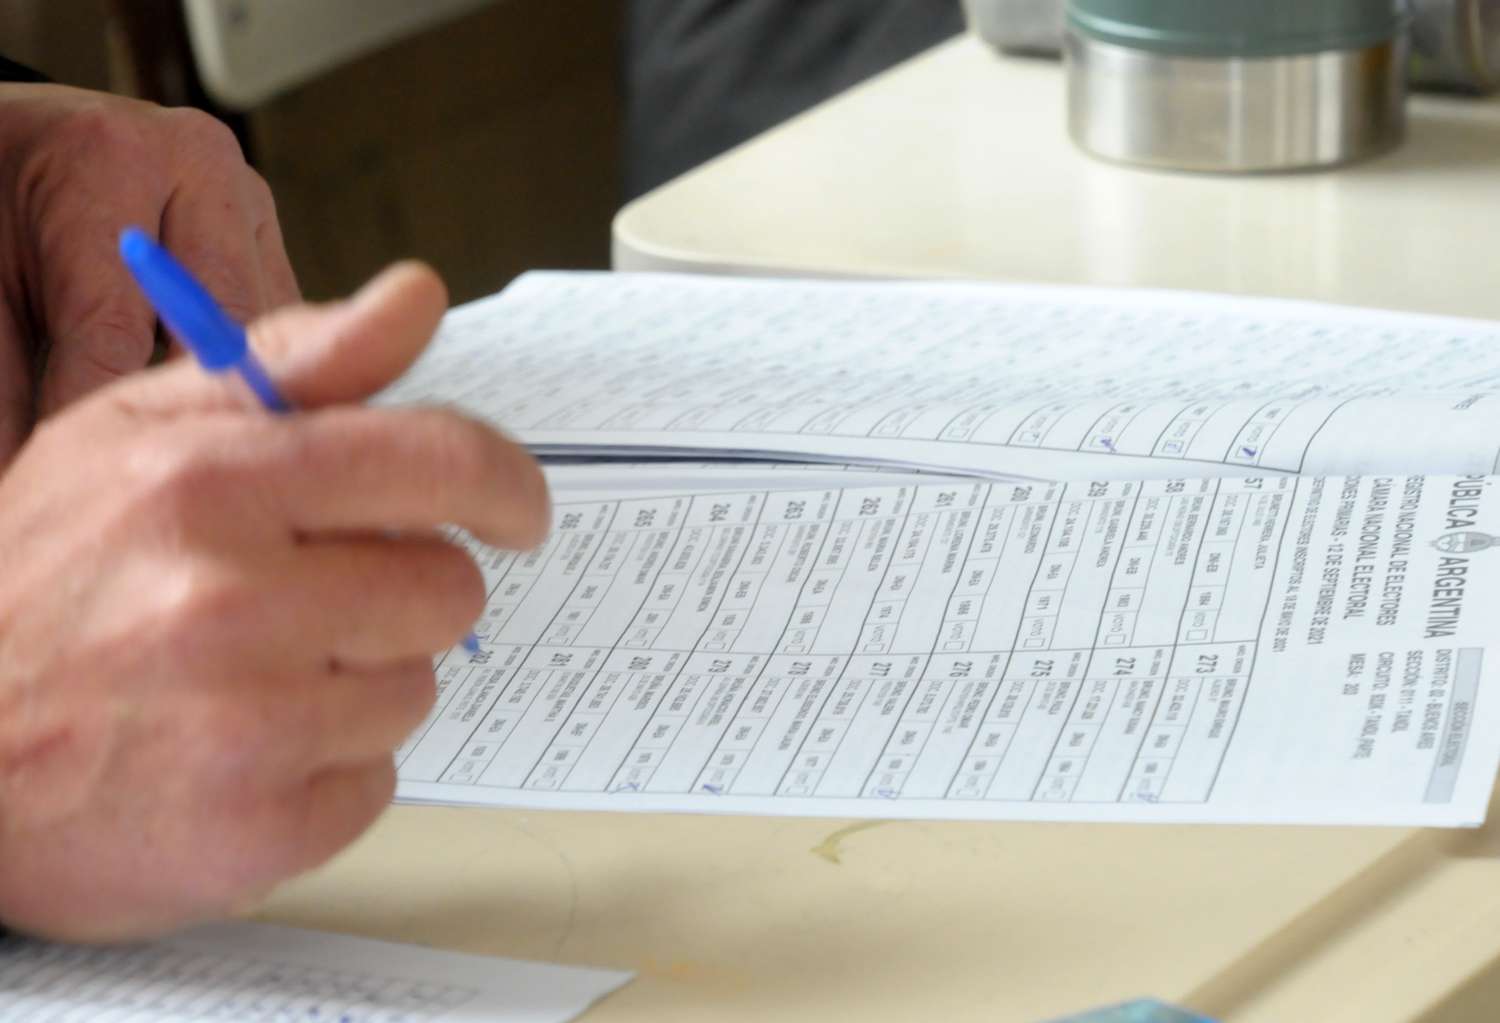 La Justicia Electoral oficializó 27 fórmulas para presidente y vice, una cifra récord para las PASO